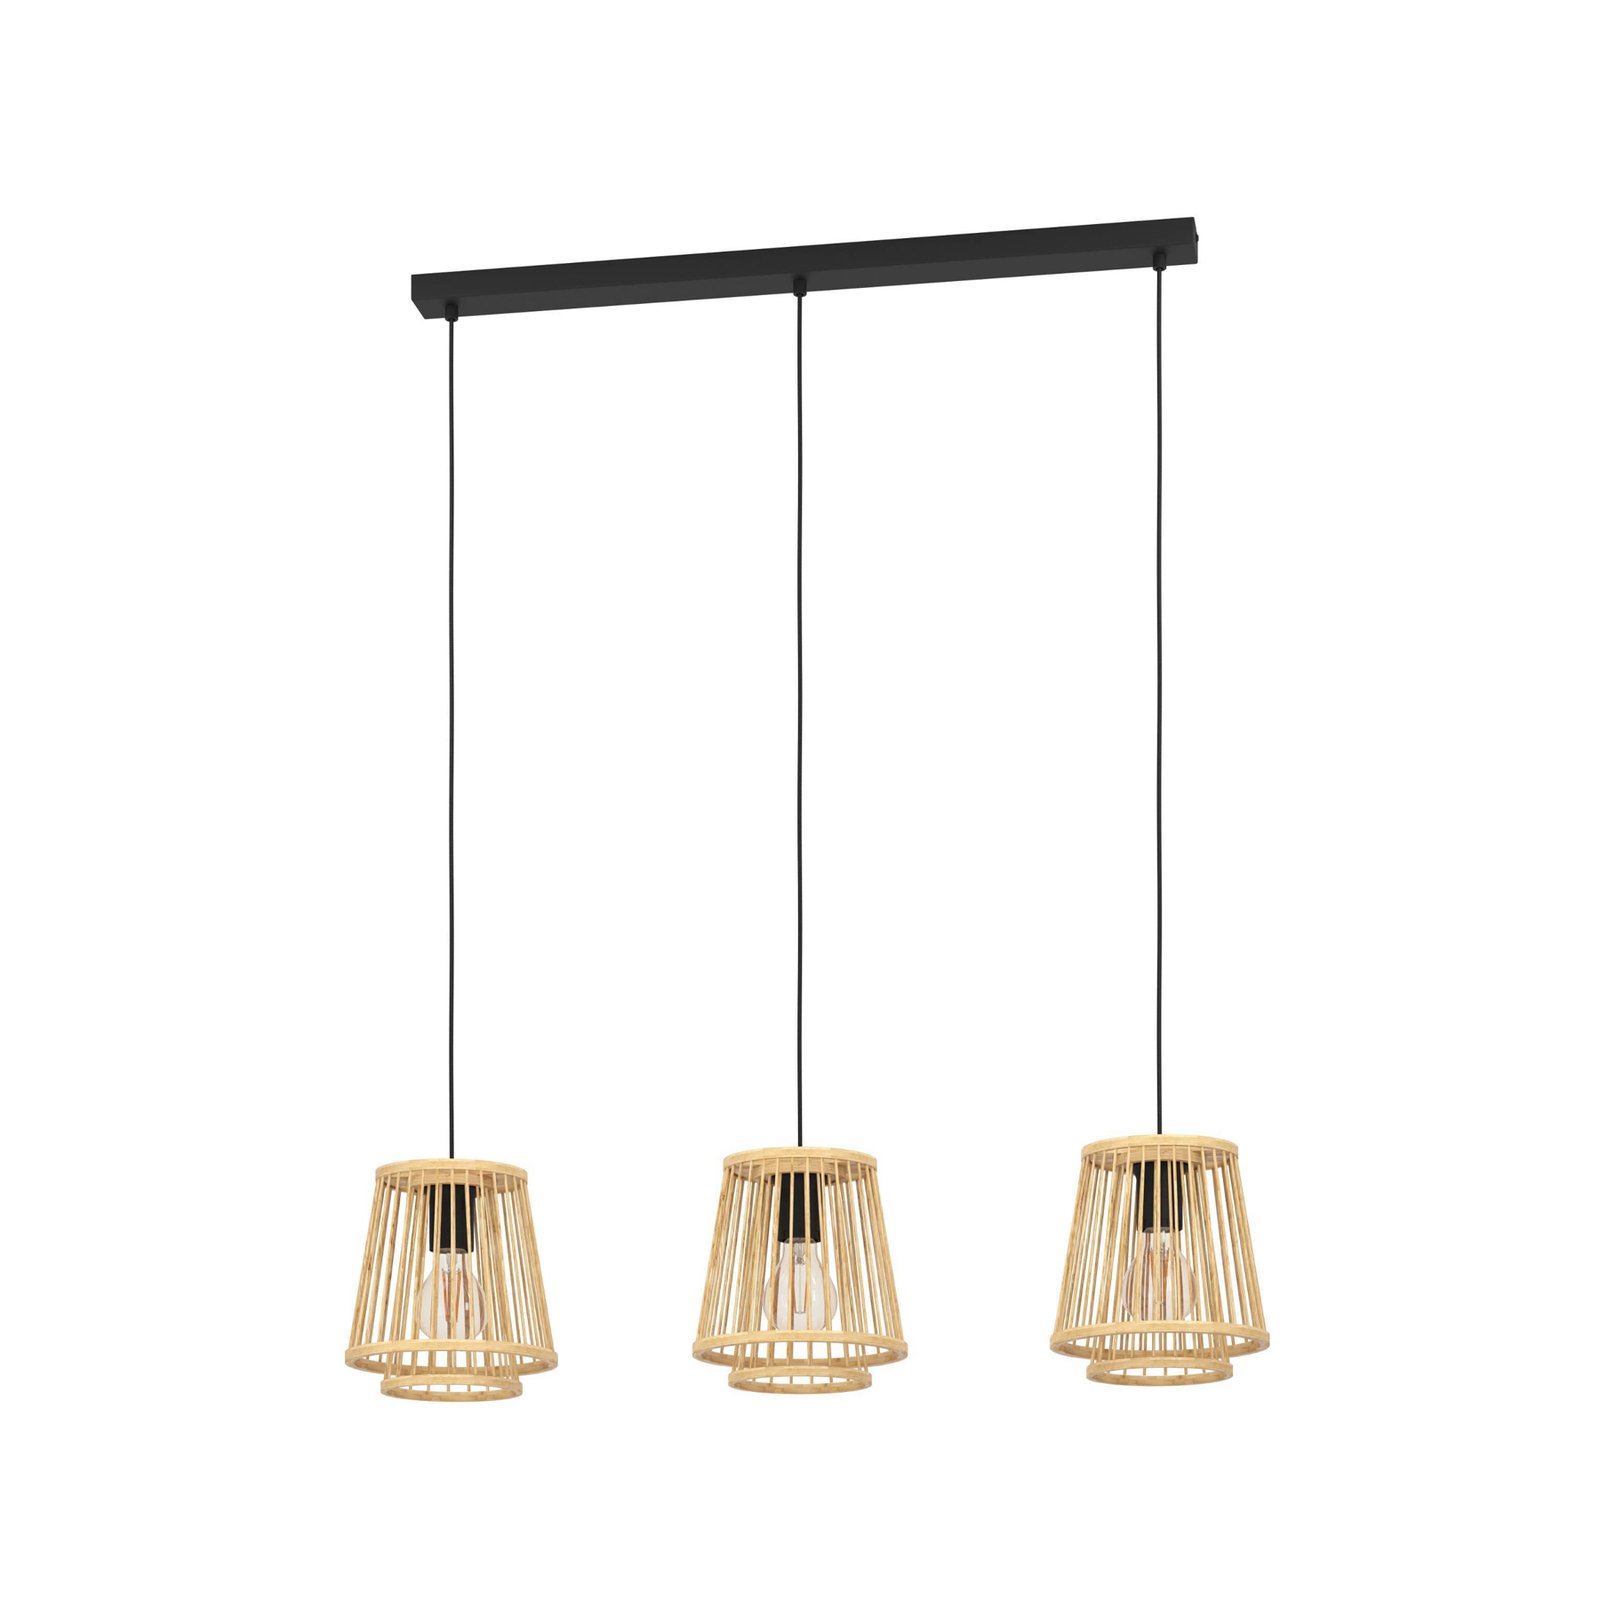 Lampă suspendată Hykeham, lungime 91 cm, naturală, 3 lumini, bambus